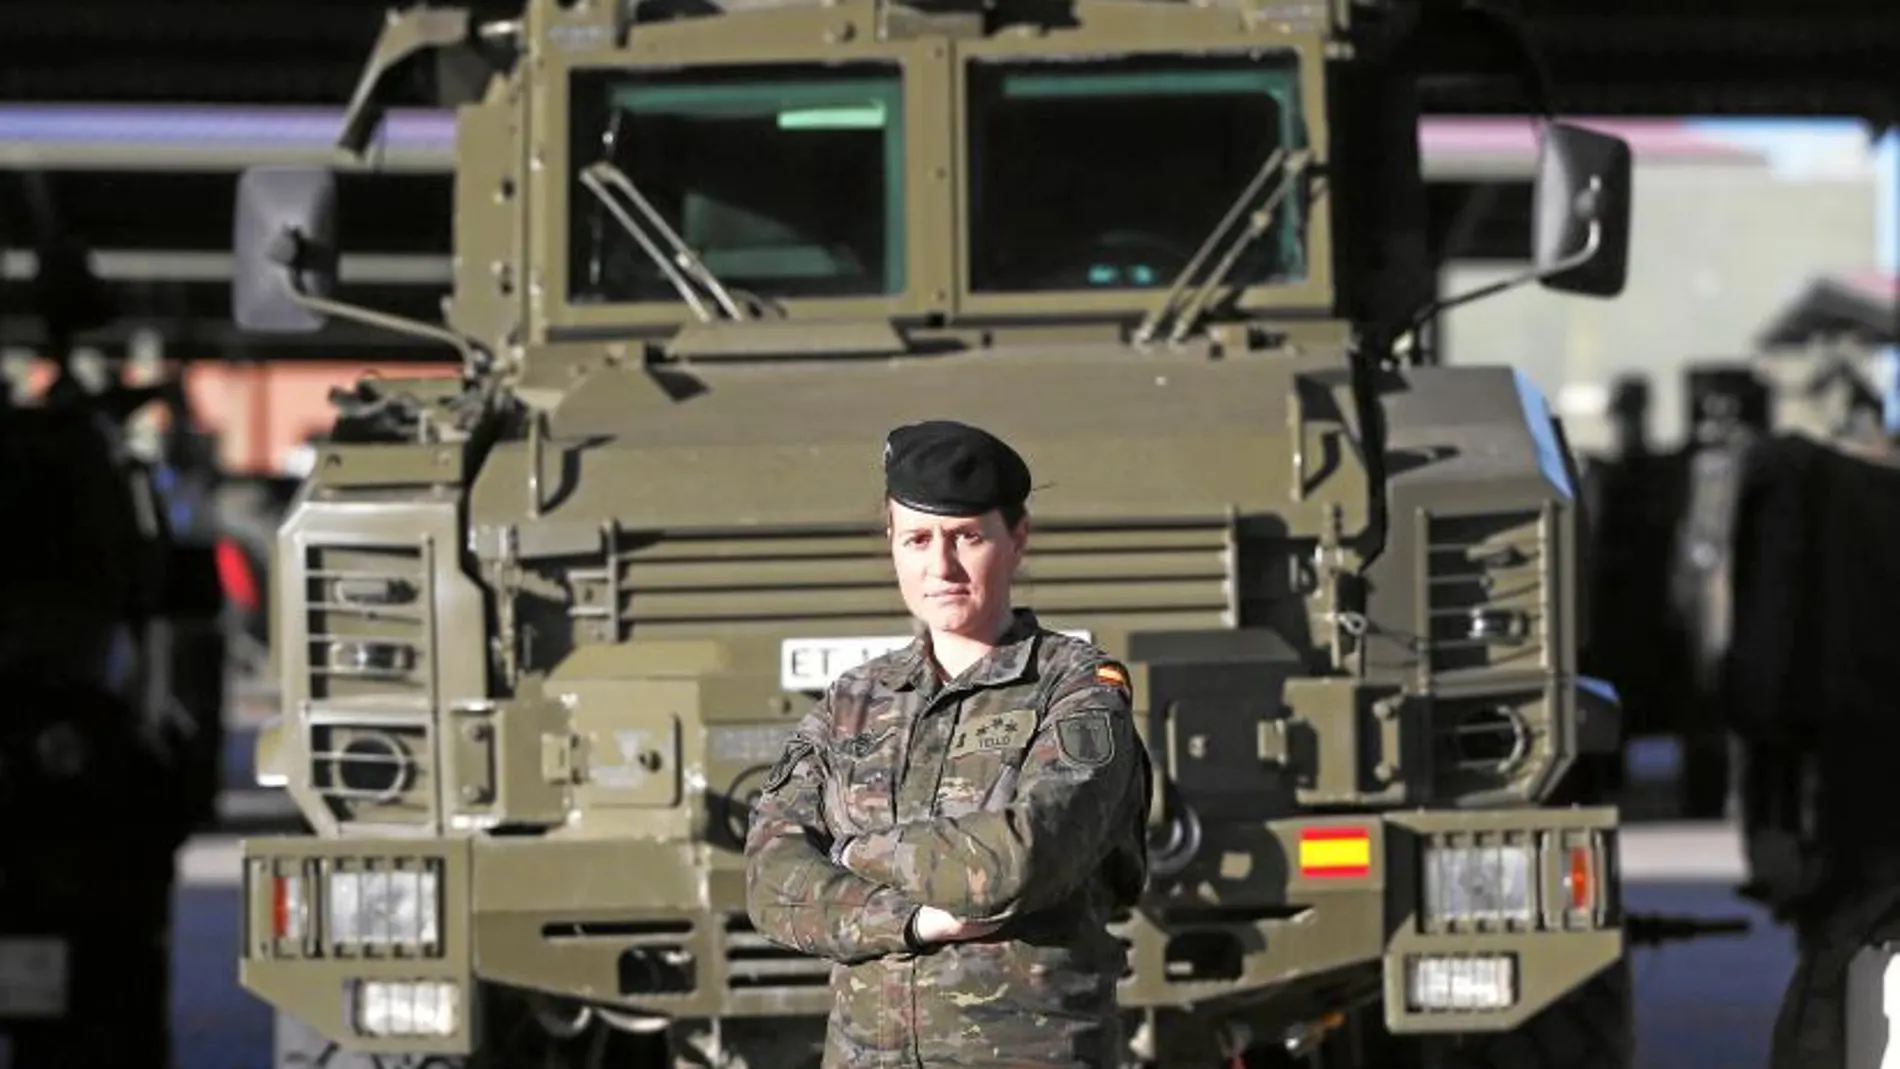 La capitán Tania Tello, en la base Príncipe de la BRIPAC, junto a uno de los blindados RG-31 con los que se desplegó en Afganistán en 2013 cuando estaba al mando de una sección de zapadores que limpiaba las rutas de explosivos